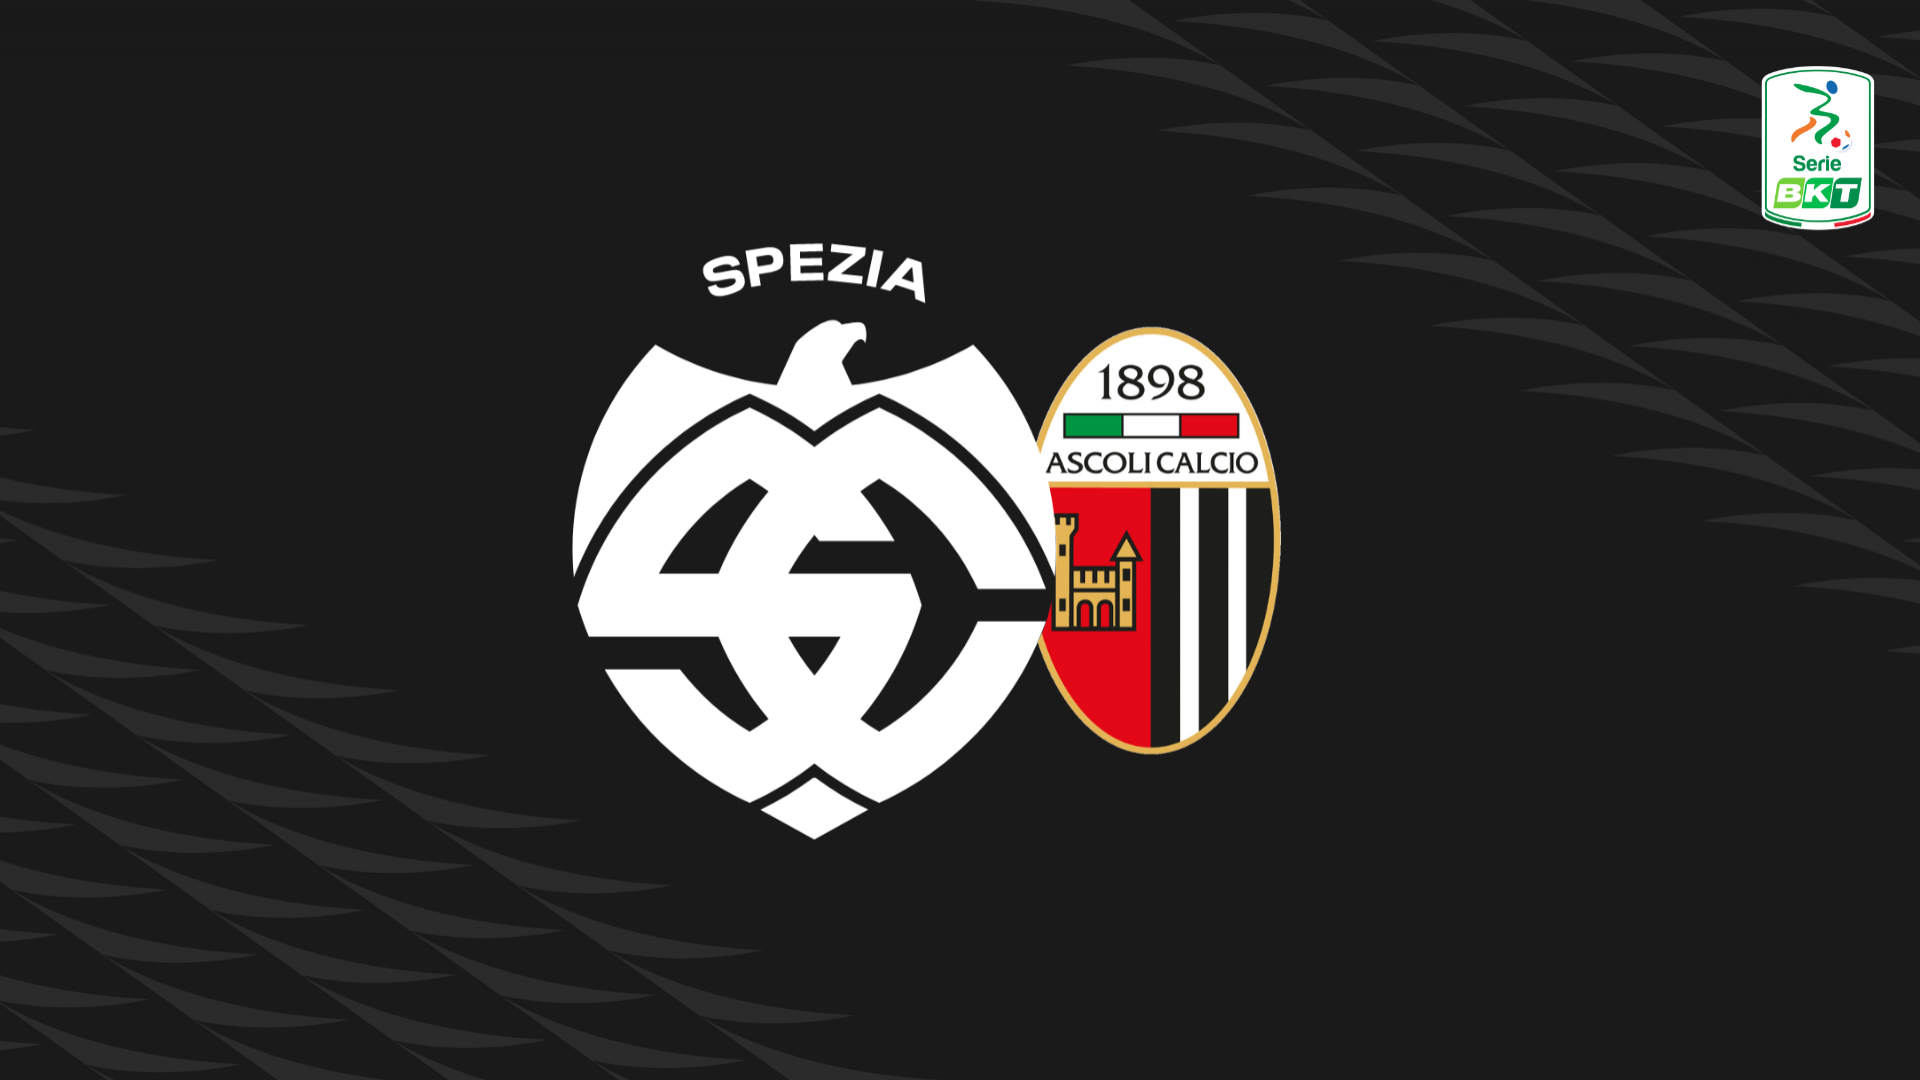 Serie BKT: Spezia-Ascoli 2-1